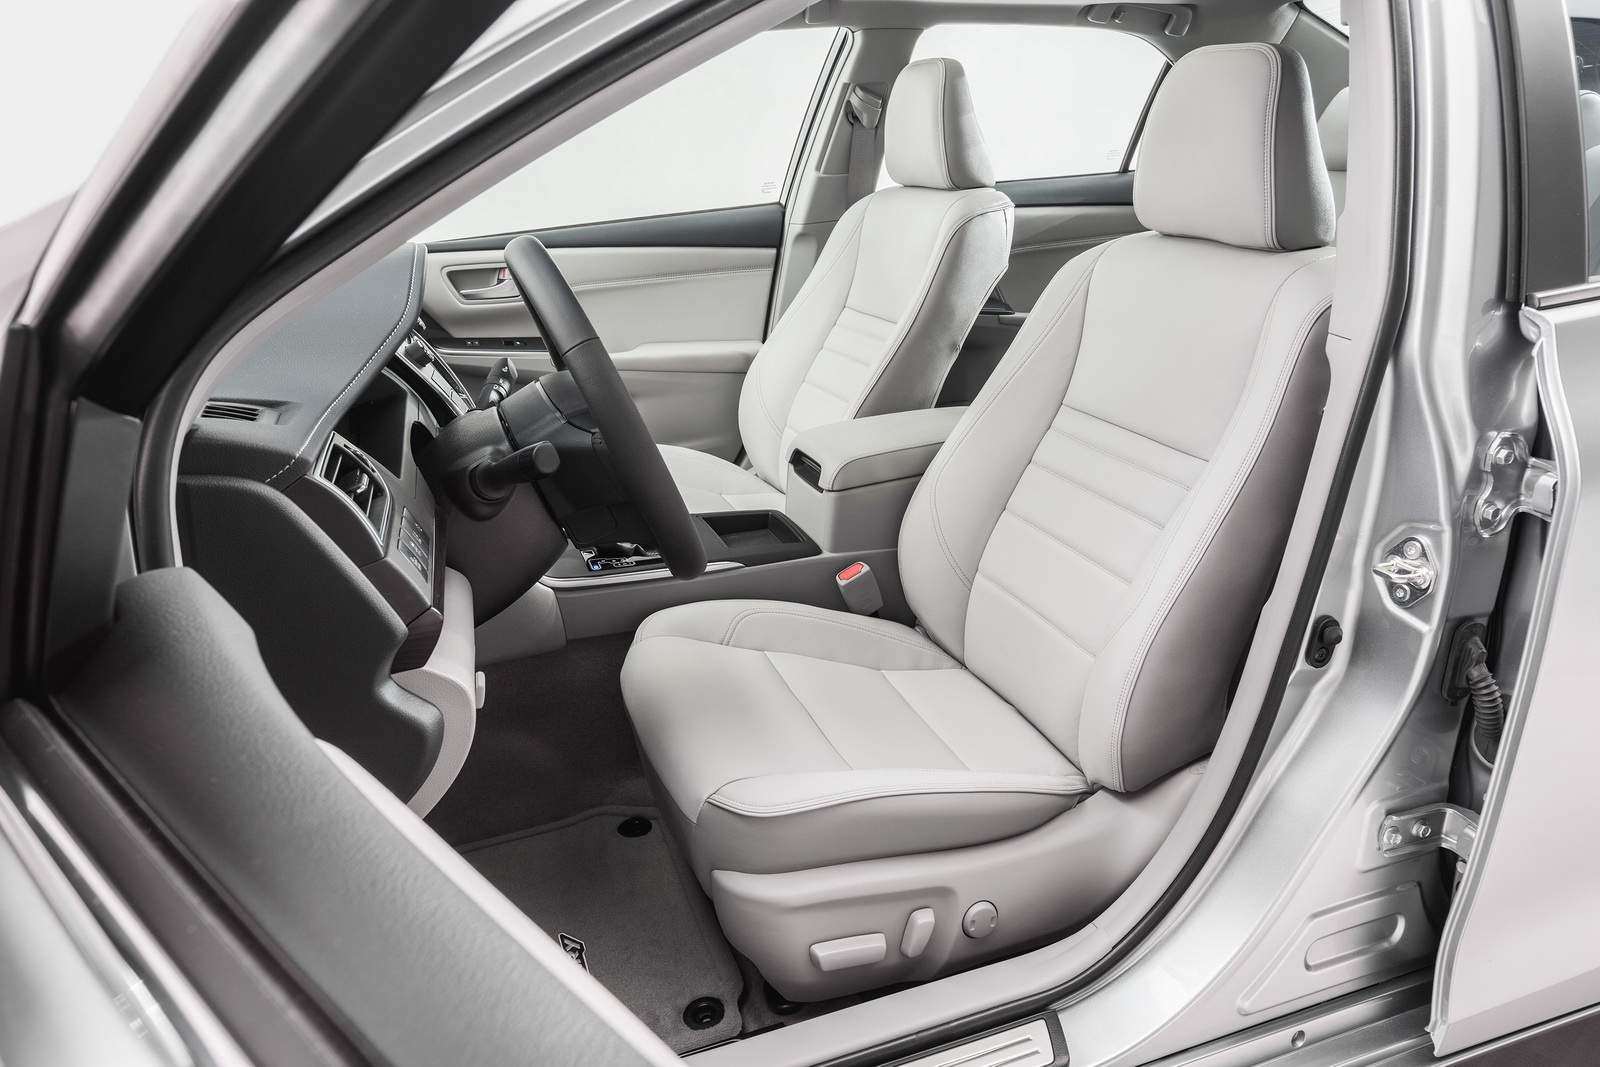 
Về an toàn, Toyota Camry 2017 đều được trang bị 10 túi khí cùng hệ thống STAR, bao gồm kiểm soát lực bám, cân bằng điện tử, phân bổ lực phanh điện tử, trợ lực phanh, công nghệ dừng thông minh và giám sát áp suất lốp.
